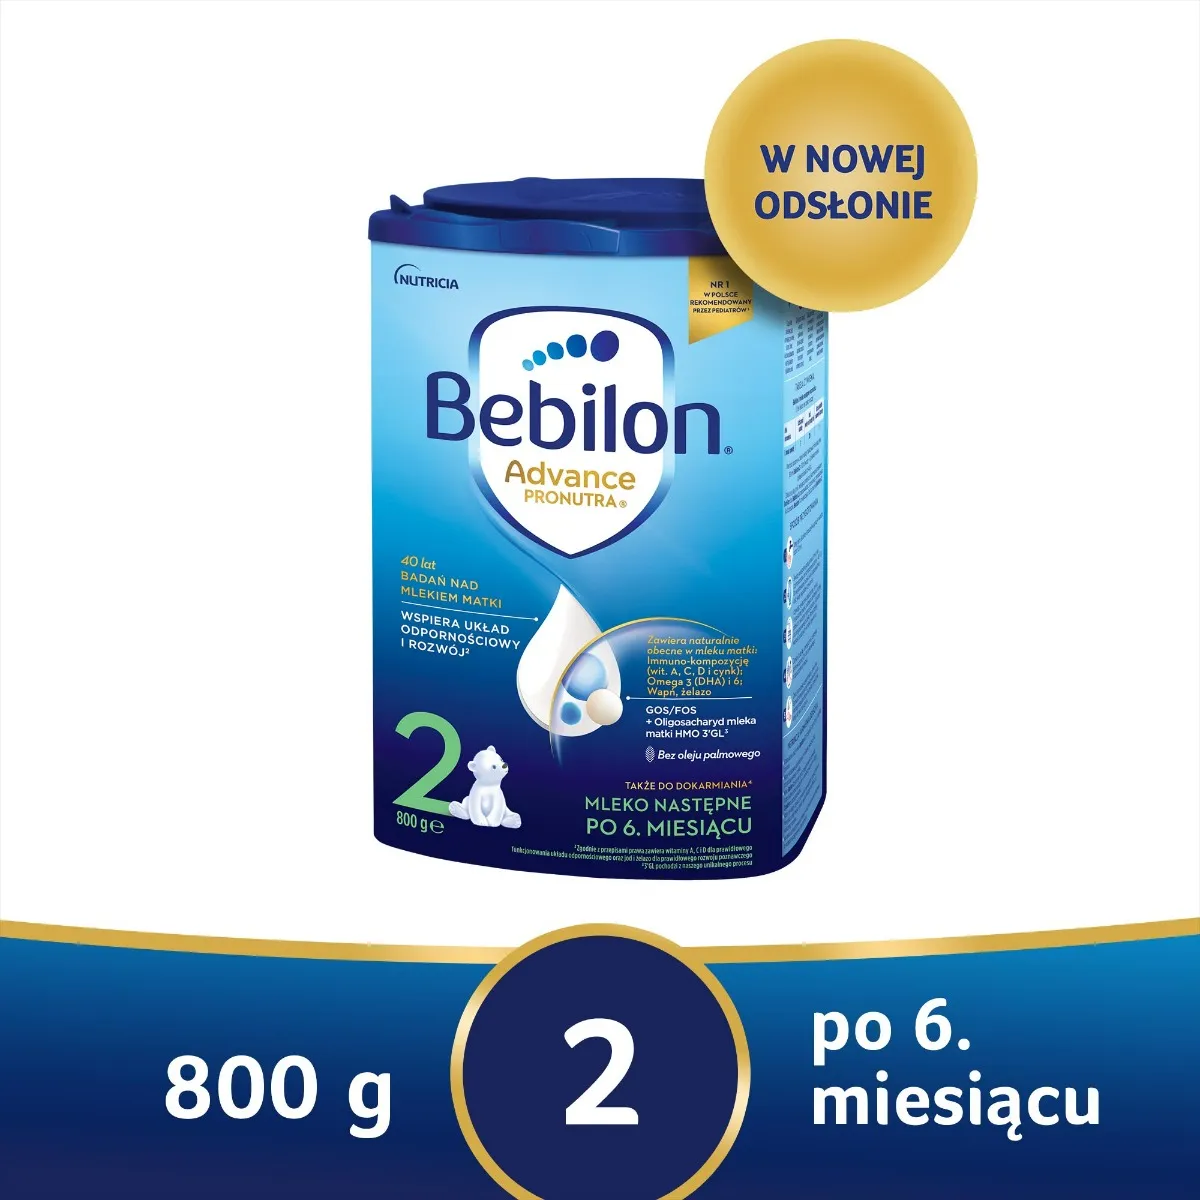 Bebilon Pronutra-Advance 2, mleko następne po 6. miesiącu, 800 g